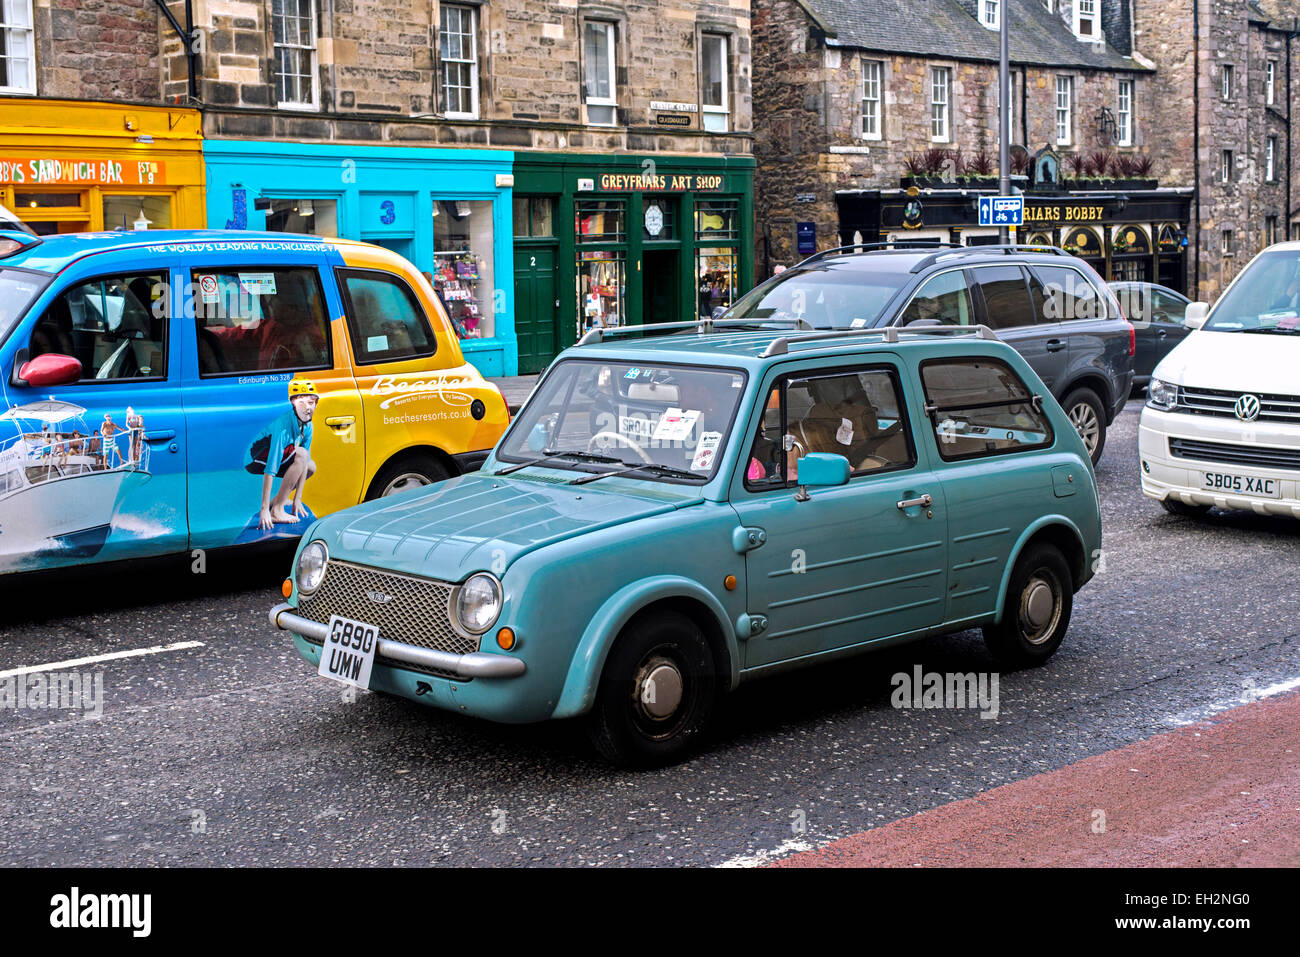 Ein Nissan Pao, ein Retro-Stil Auto von Nissan Motors, sitzen im Verkehr auf George IV Bridge in Edinburgh, Schottland, Großbritannien. Stockfoto